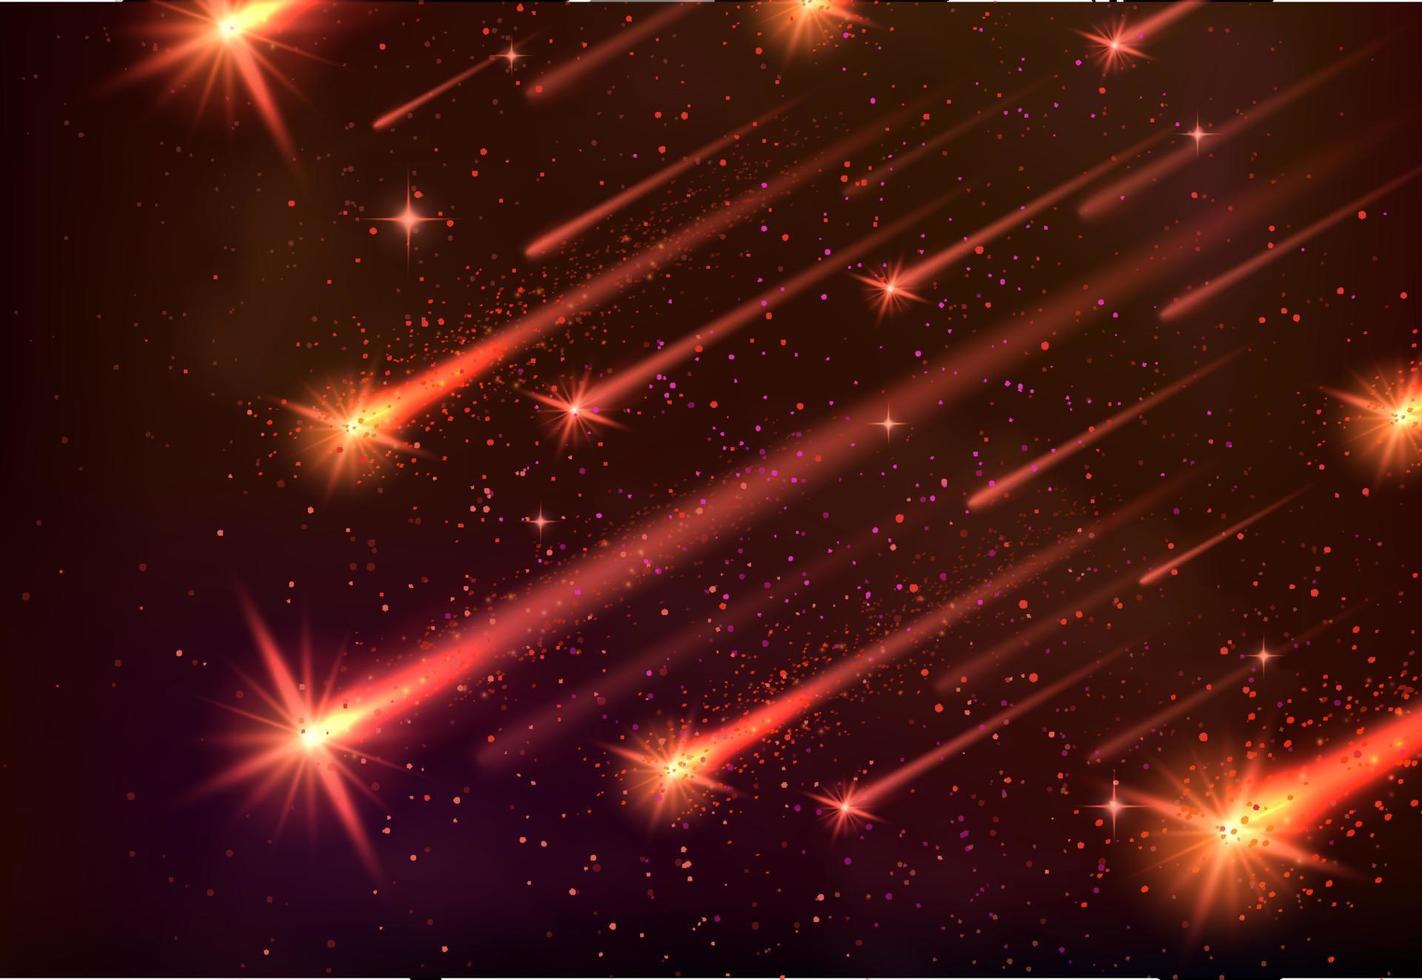 estandarte vectorial espacial de lluvia de meteoritos, estrellas fugaces y cometas o asteroides que caen con bolas de fuego de meteoritos amarillos brillantes, senderos de fuego brillantes y chispas naranjas. galaxia, universo y astronomía vector